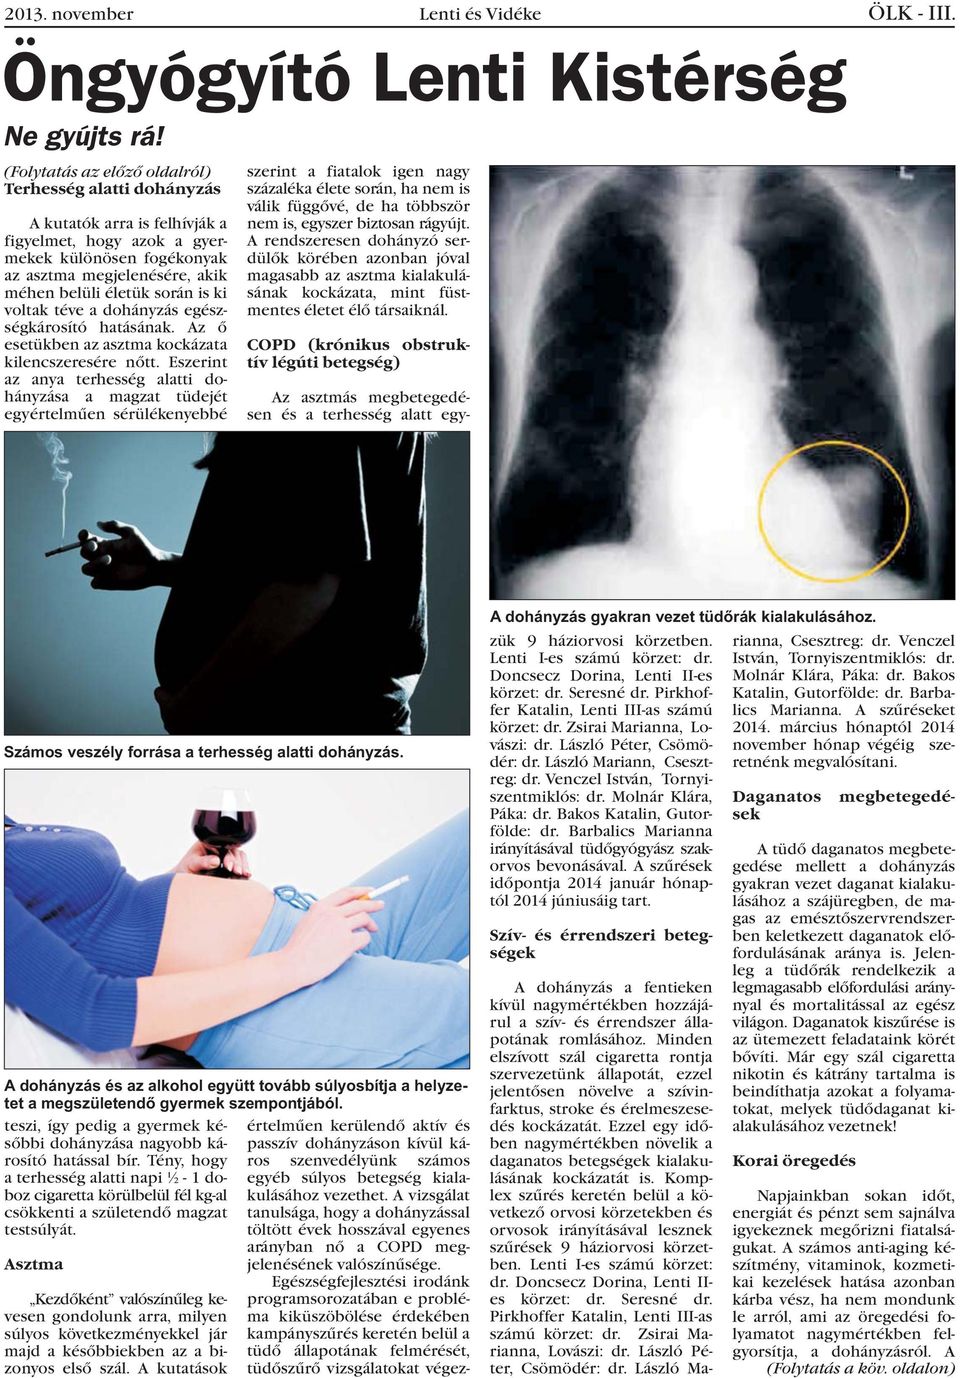 ki voltak téve a dohányzás egészségkárosító hatásának. Az õ esetükben az asztma kockázata kilencszeresére nõtt.